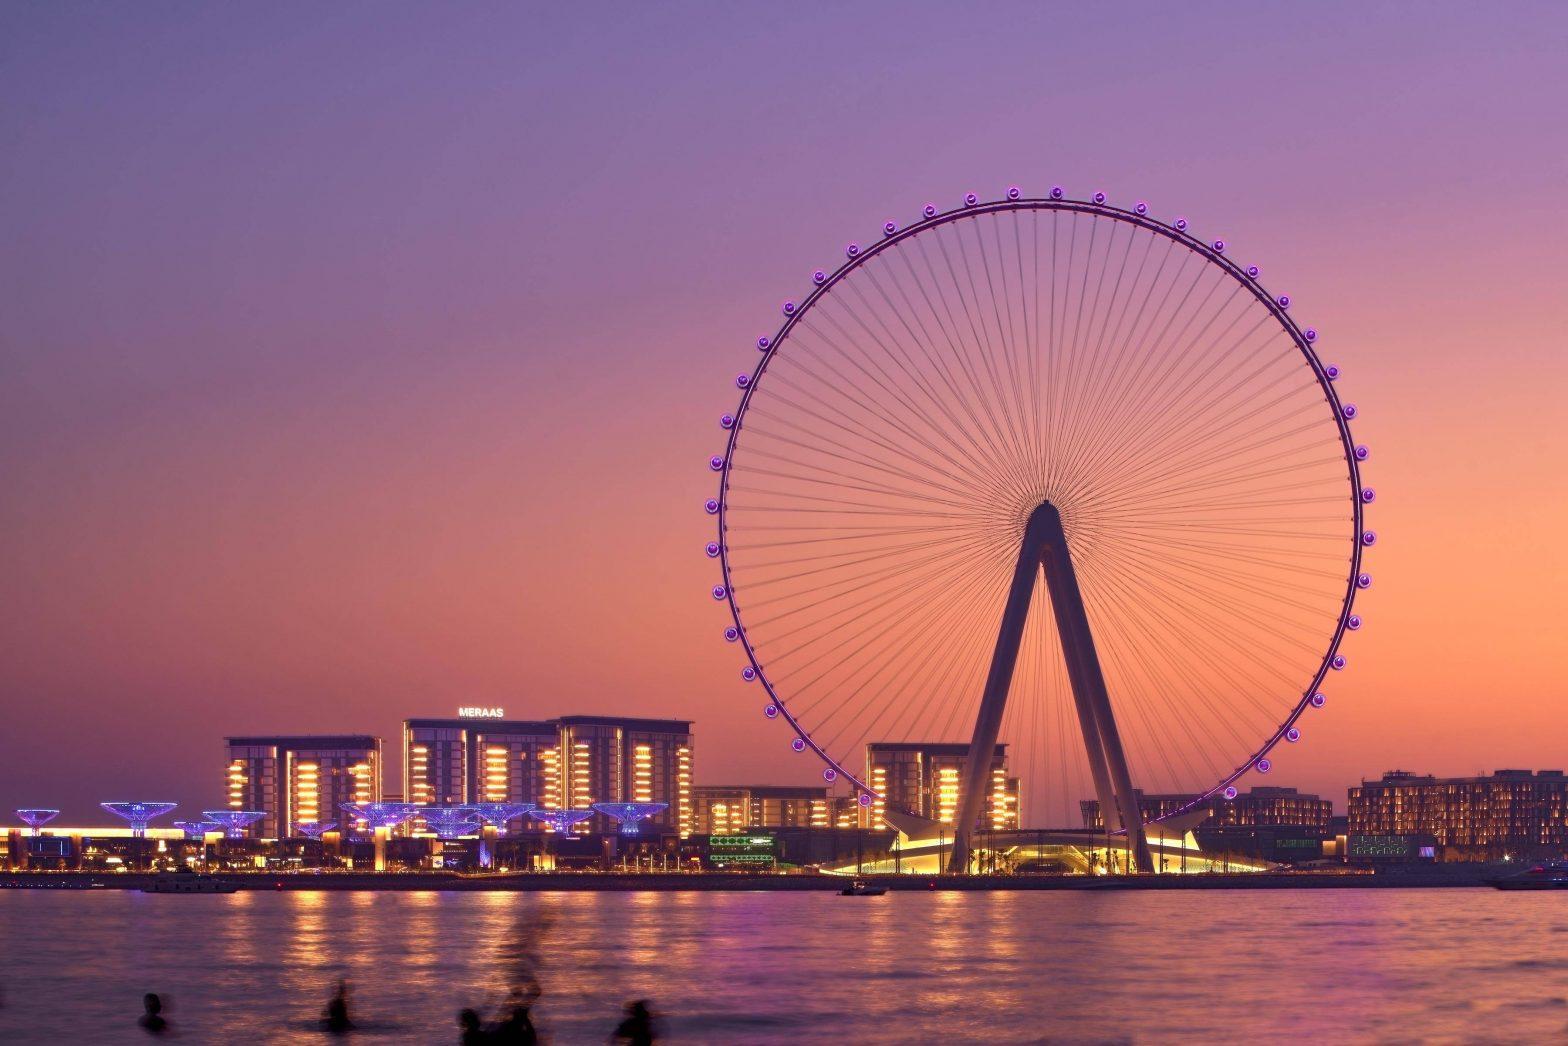 সংযুক্ত আরব আমিরশাহি বিশ্বের সবচেয়ে উঁচু পর্যবেক্ষণীয় চাকা ‘Ain Dubai’ তৈরী করেছে